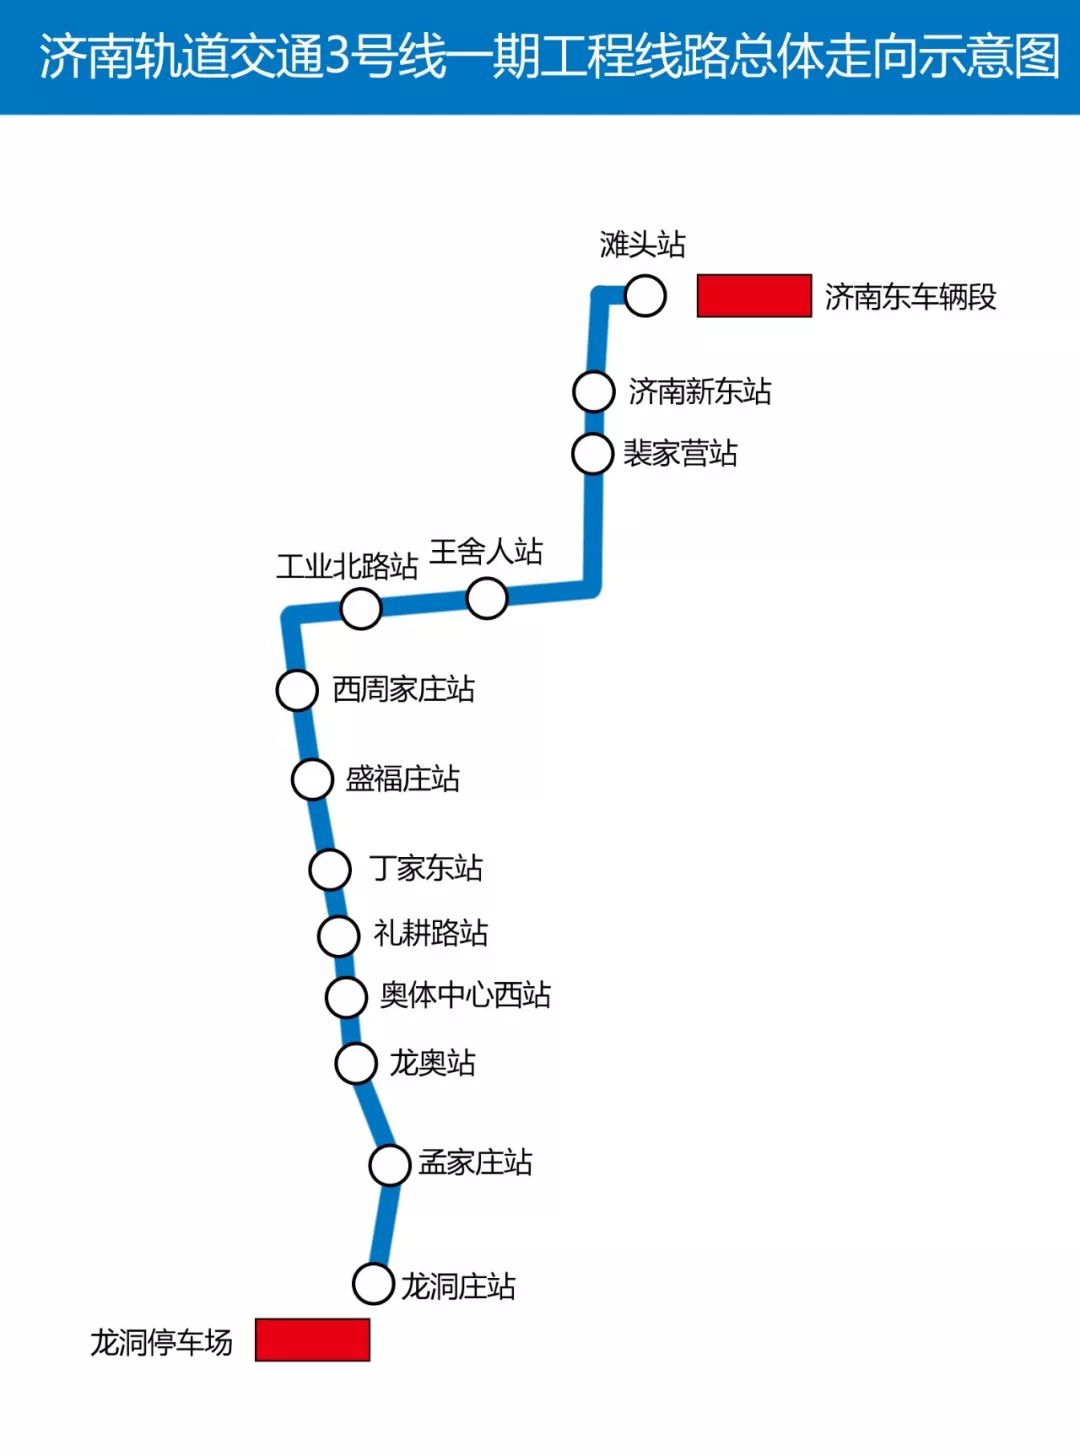 30分钟内跑完全程济南地铁3号线通车在即9列小蓝已就位